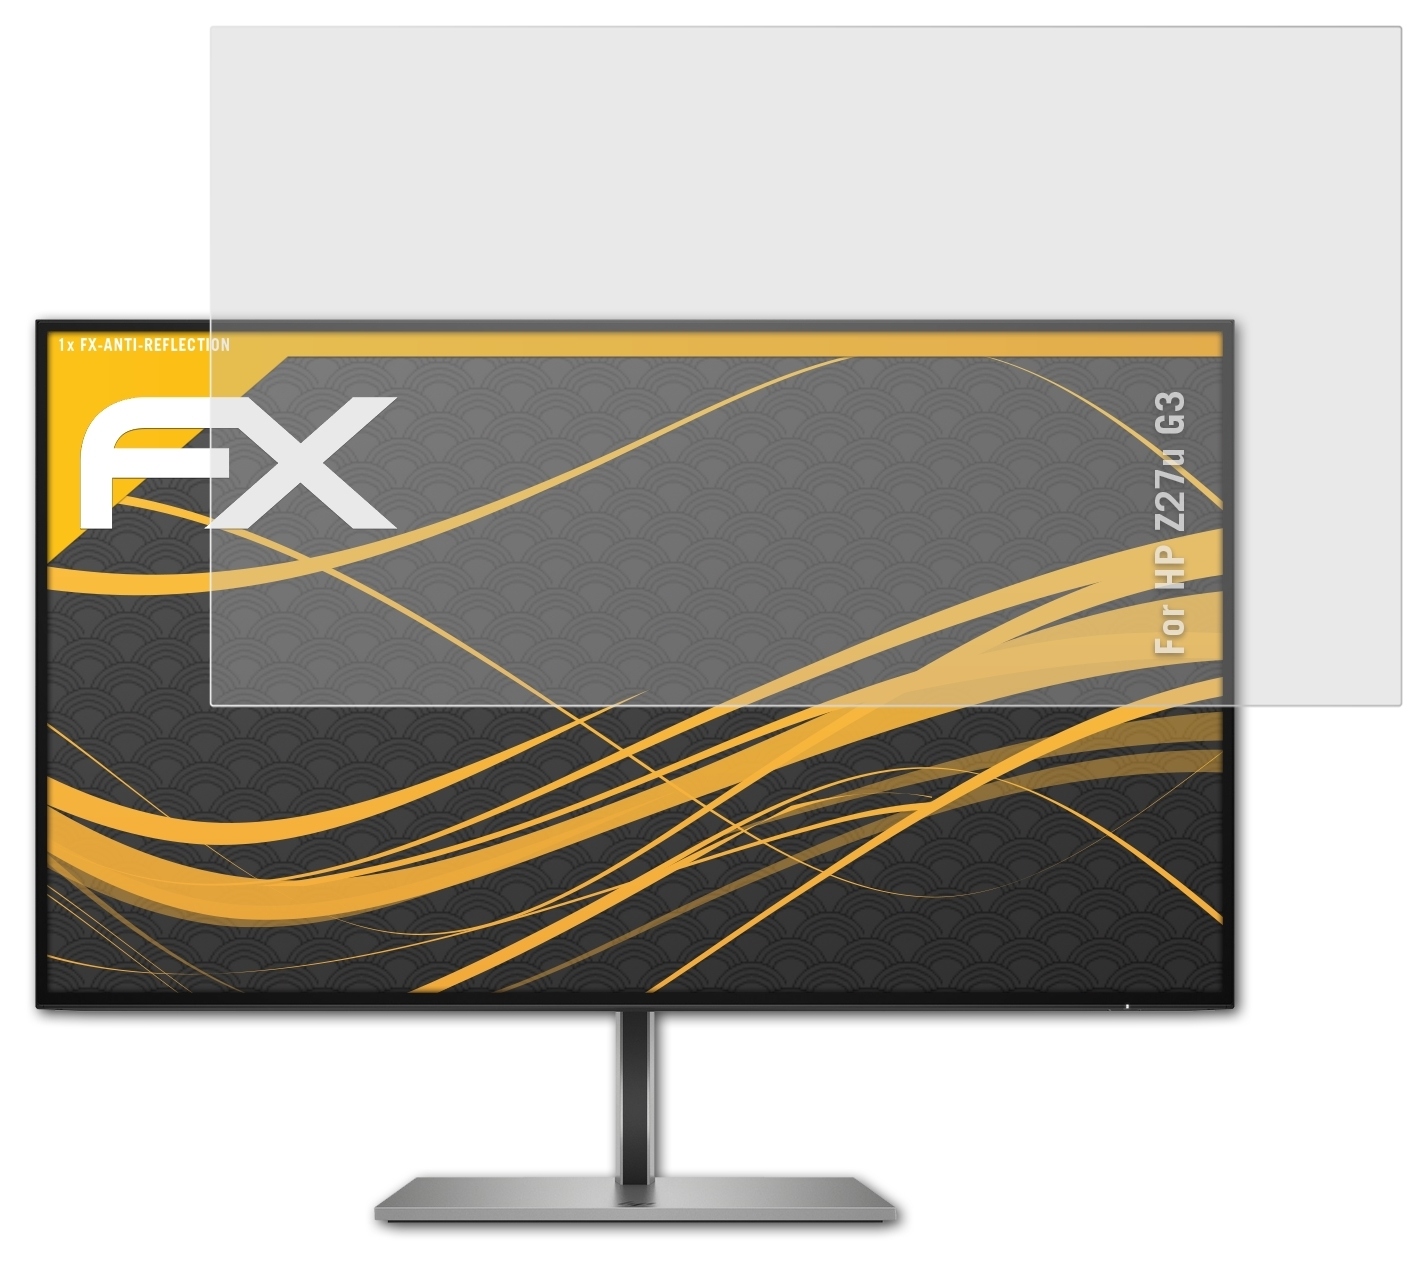 ATFOLIX FX-Antireflex Displayschutz(für G3) HP Z27u